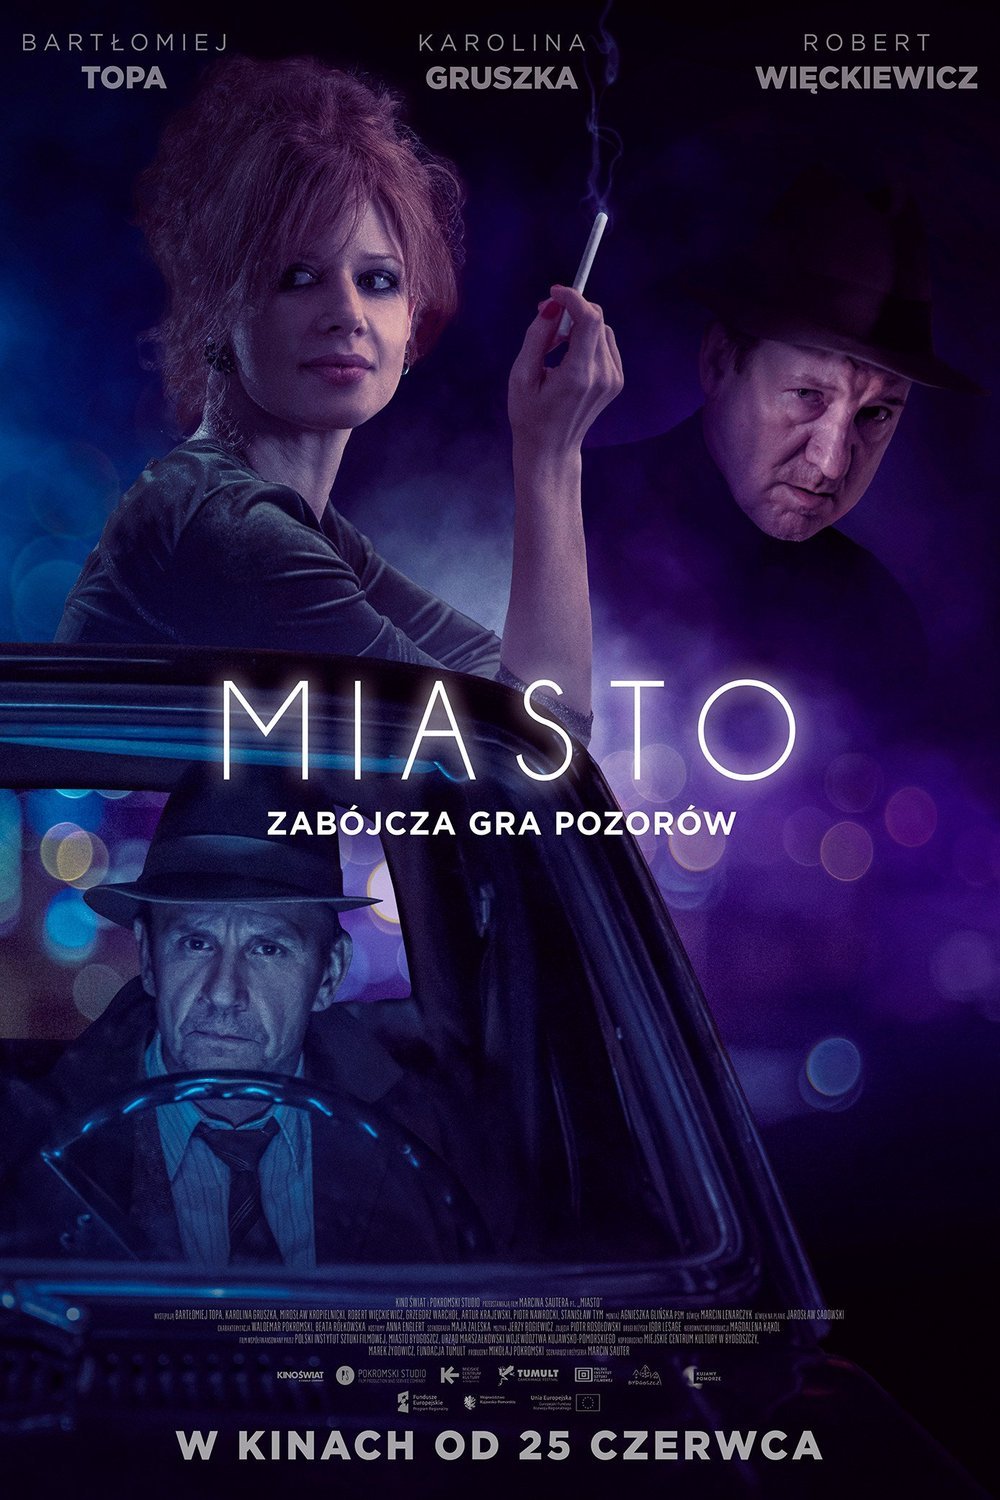 Polish poster of the movie Miasto